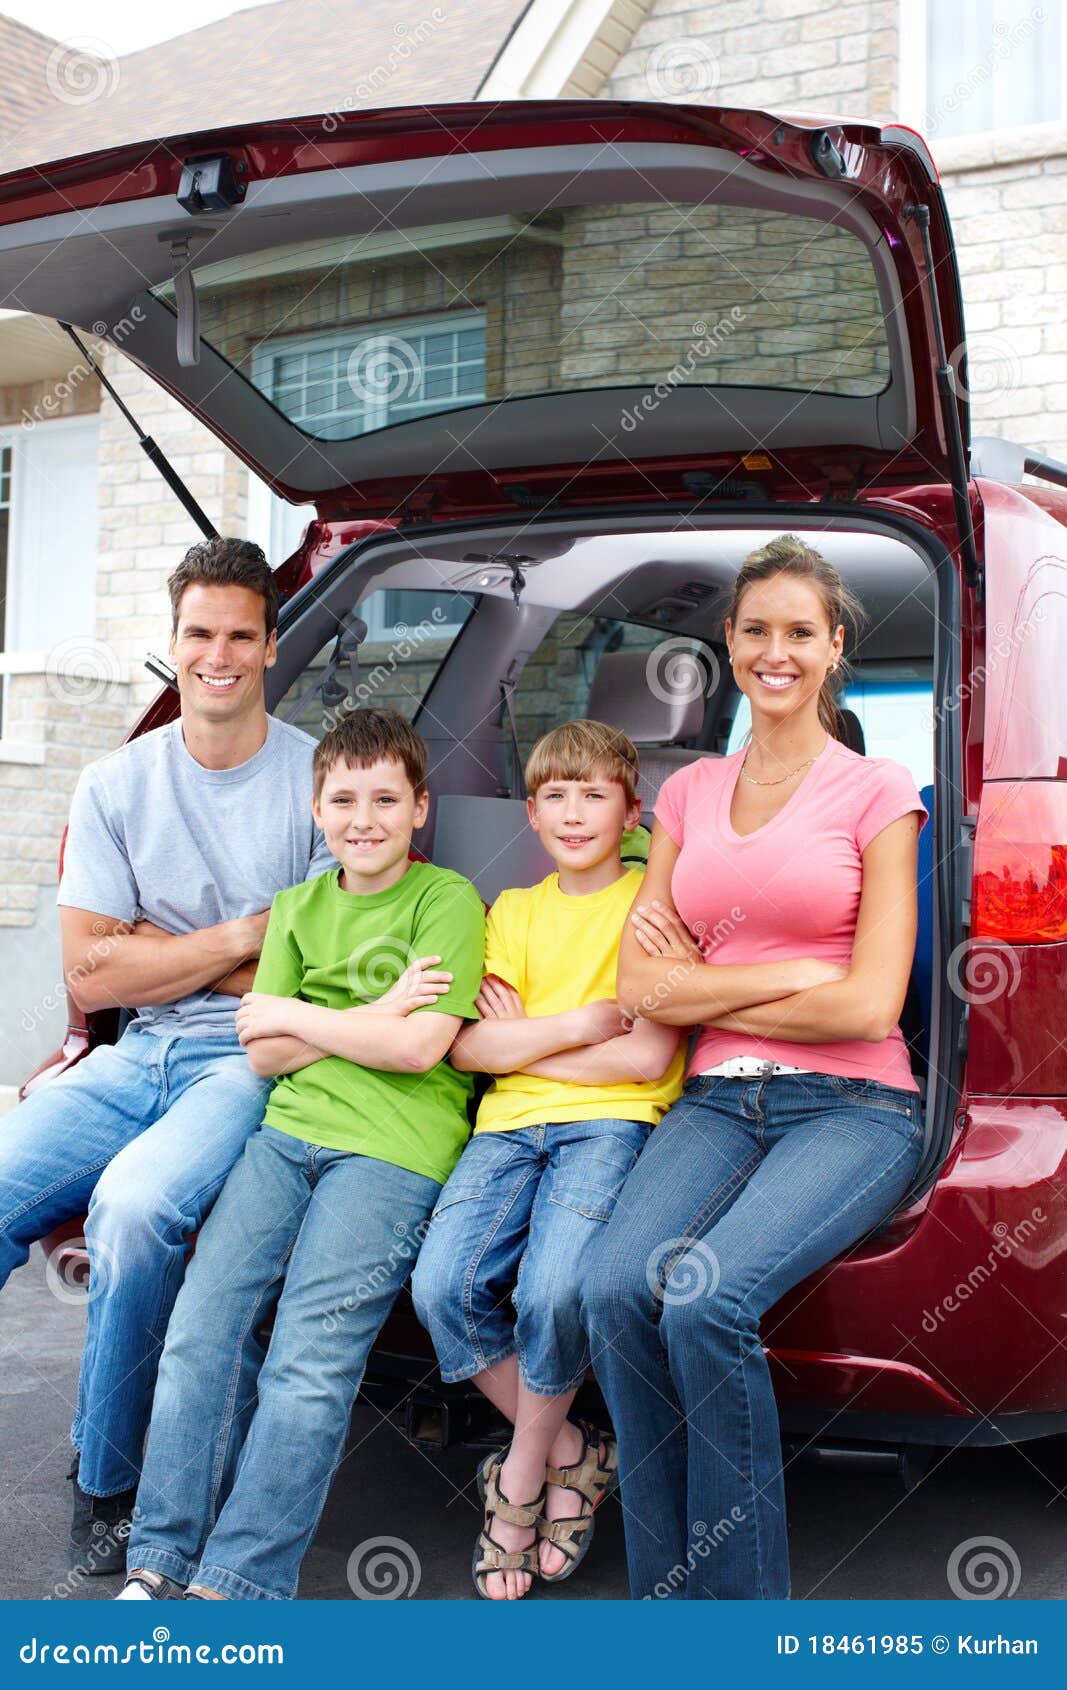 Car drive family. Семья с автомобилем. Счастливая семья на автомобиле. Автомобиль для семьи с 3 детьми. Семейная фотосессия с машиной.